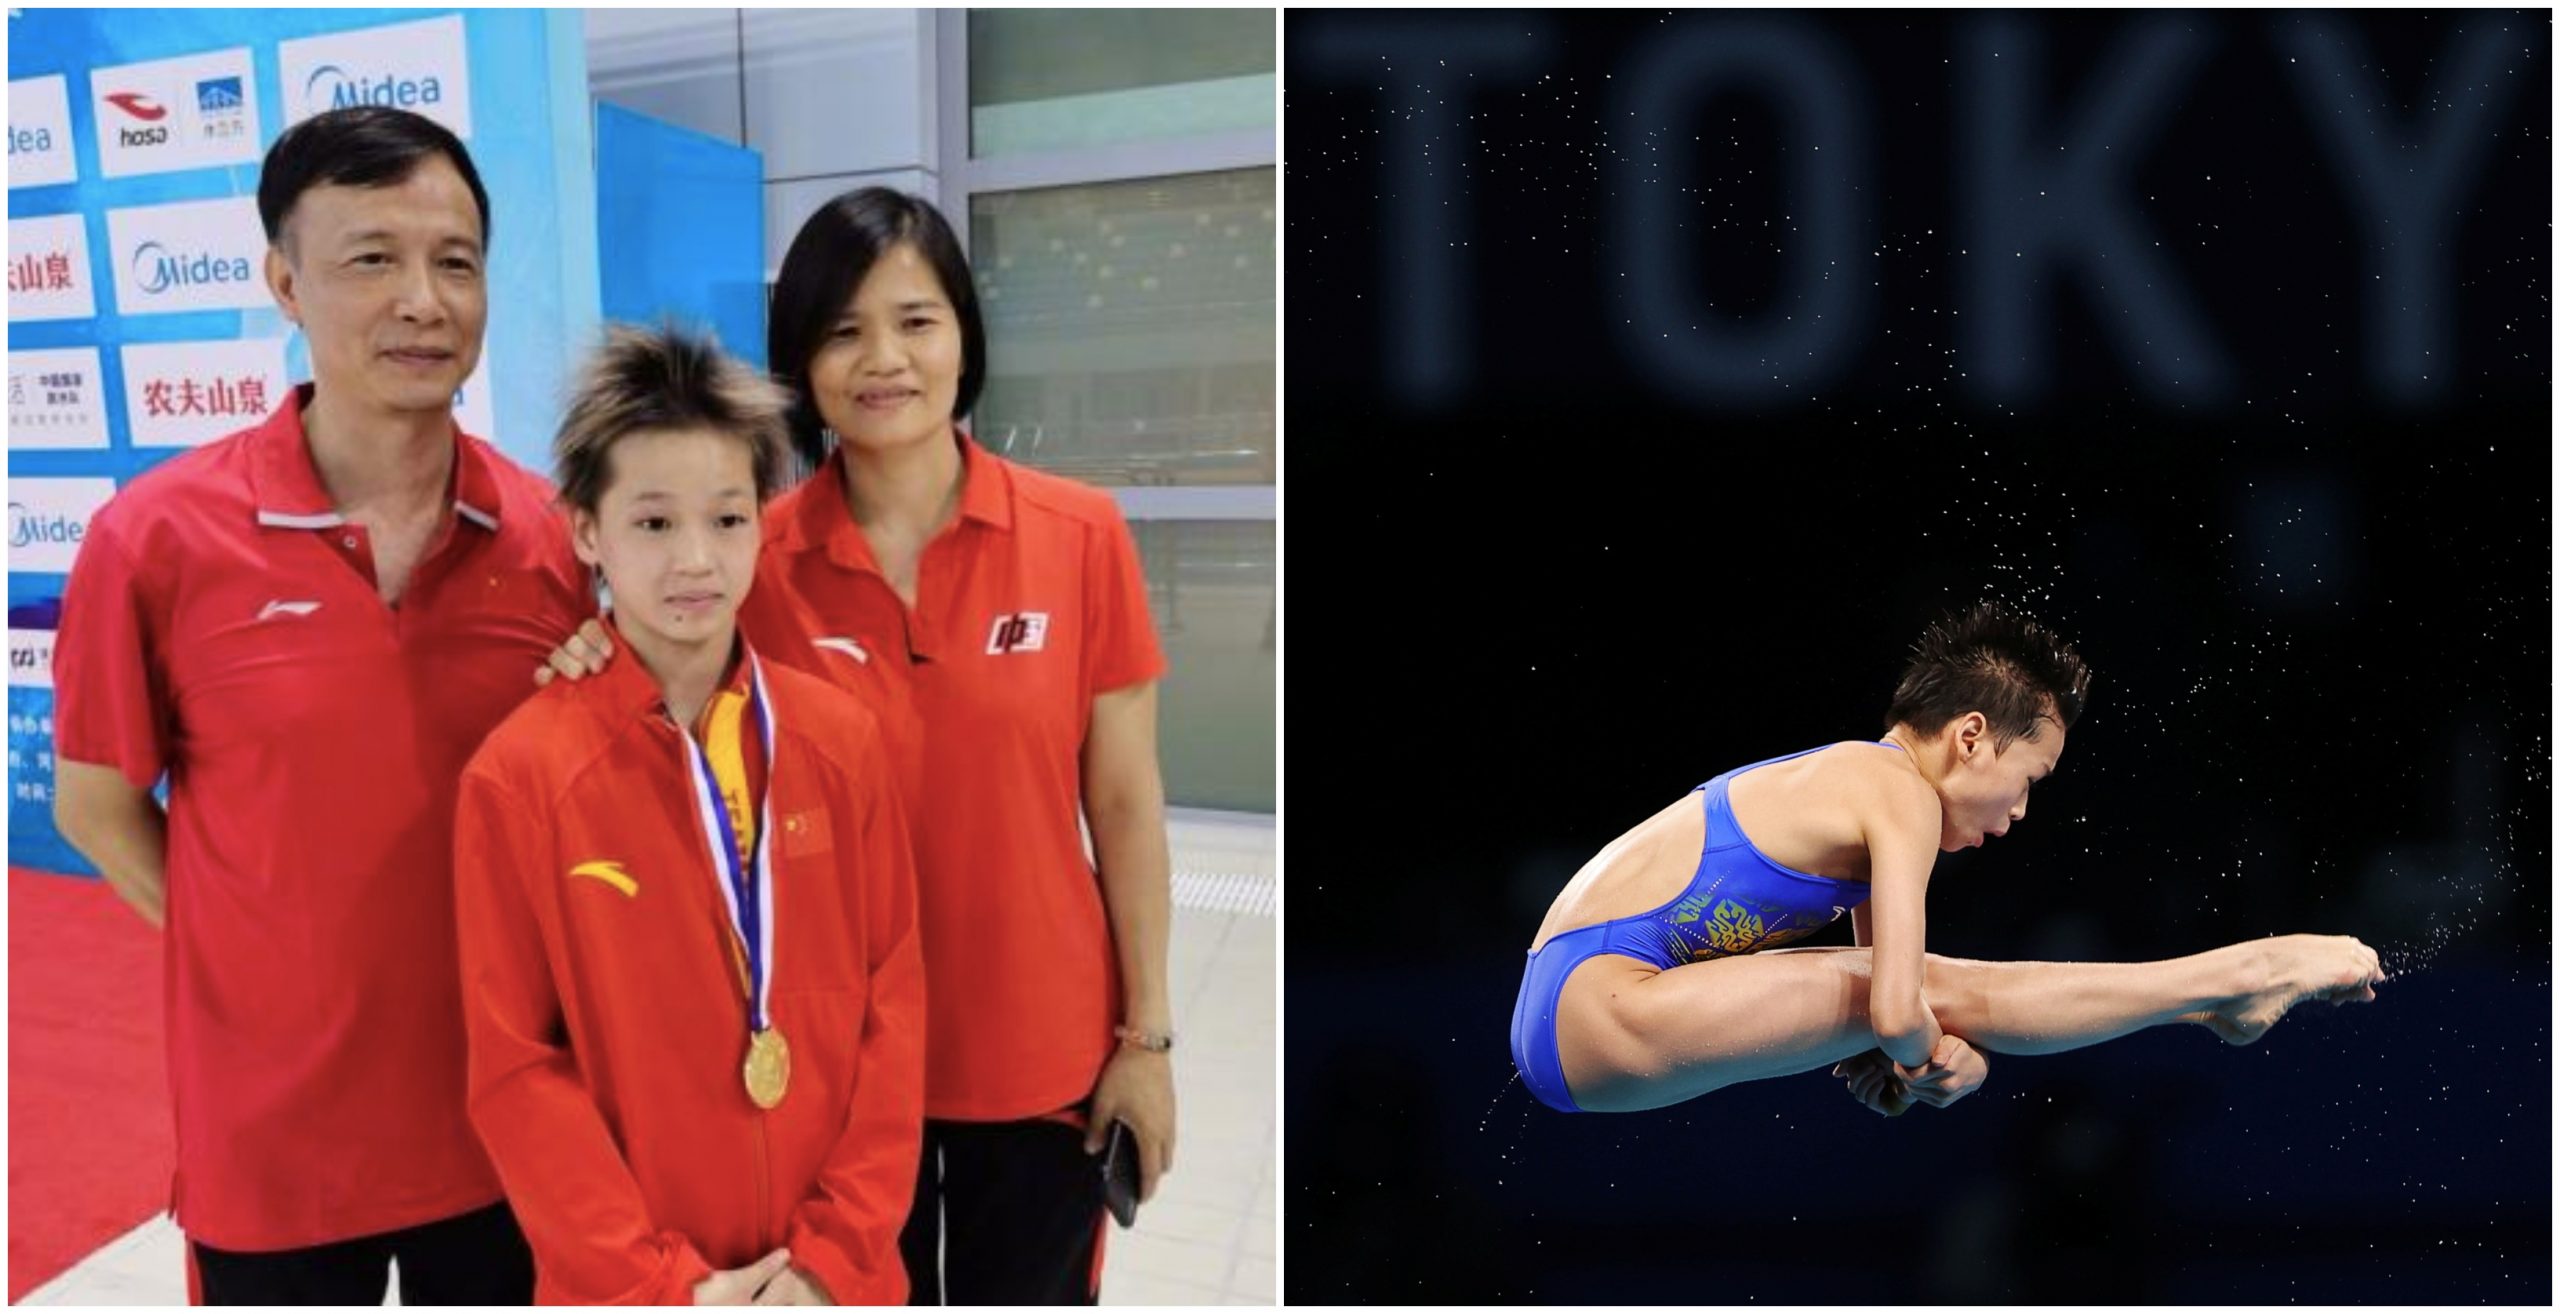 Terjunan Sempurna Setiap Pusingan, Kenali Atlet Olimpik China Berusia 14 Tahun Yang Bikin Ramai Tergamam